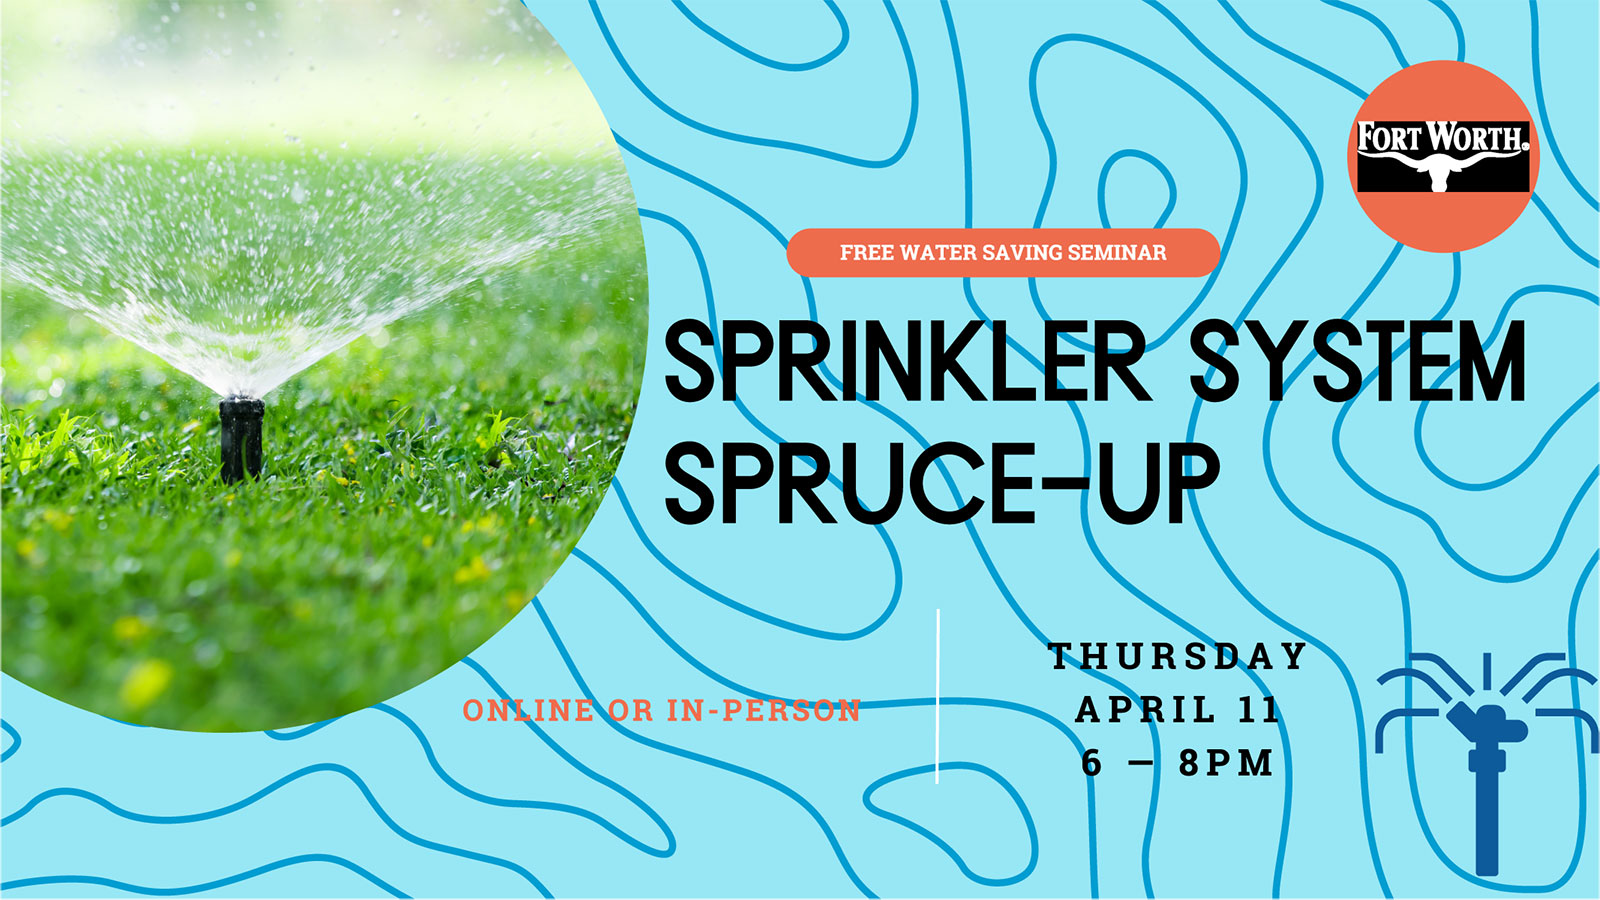 Free Water Saving Seminar - Sprinkler System Spruce-Up